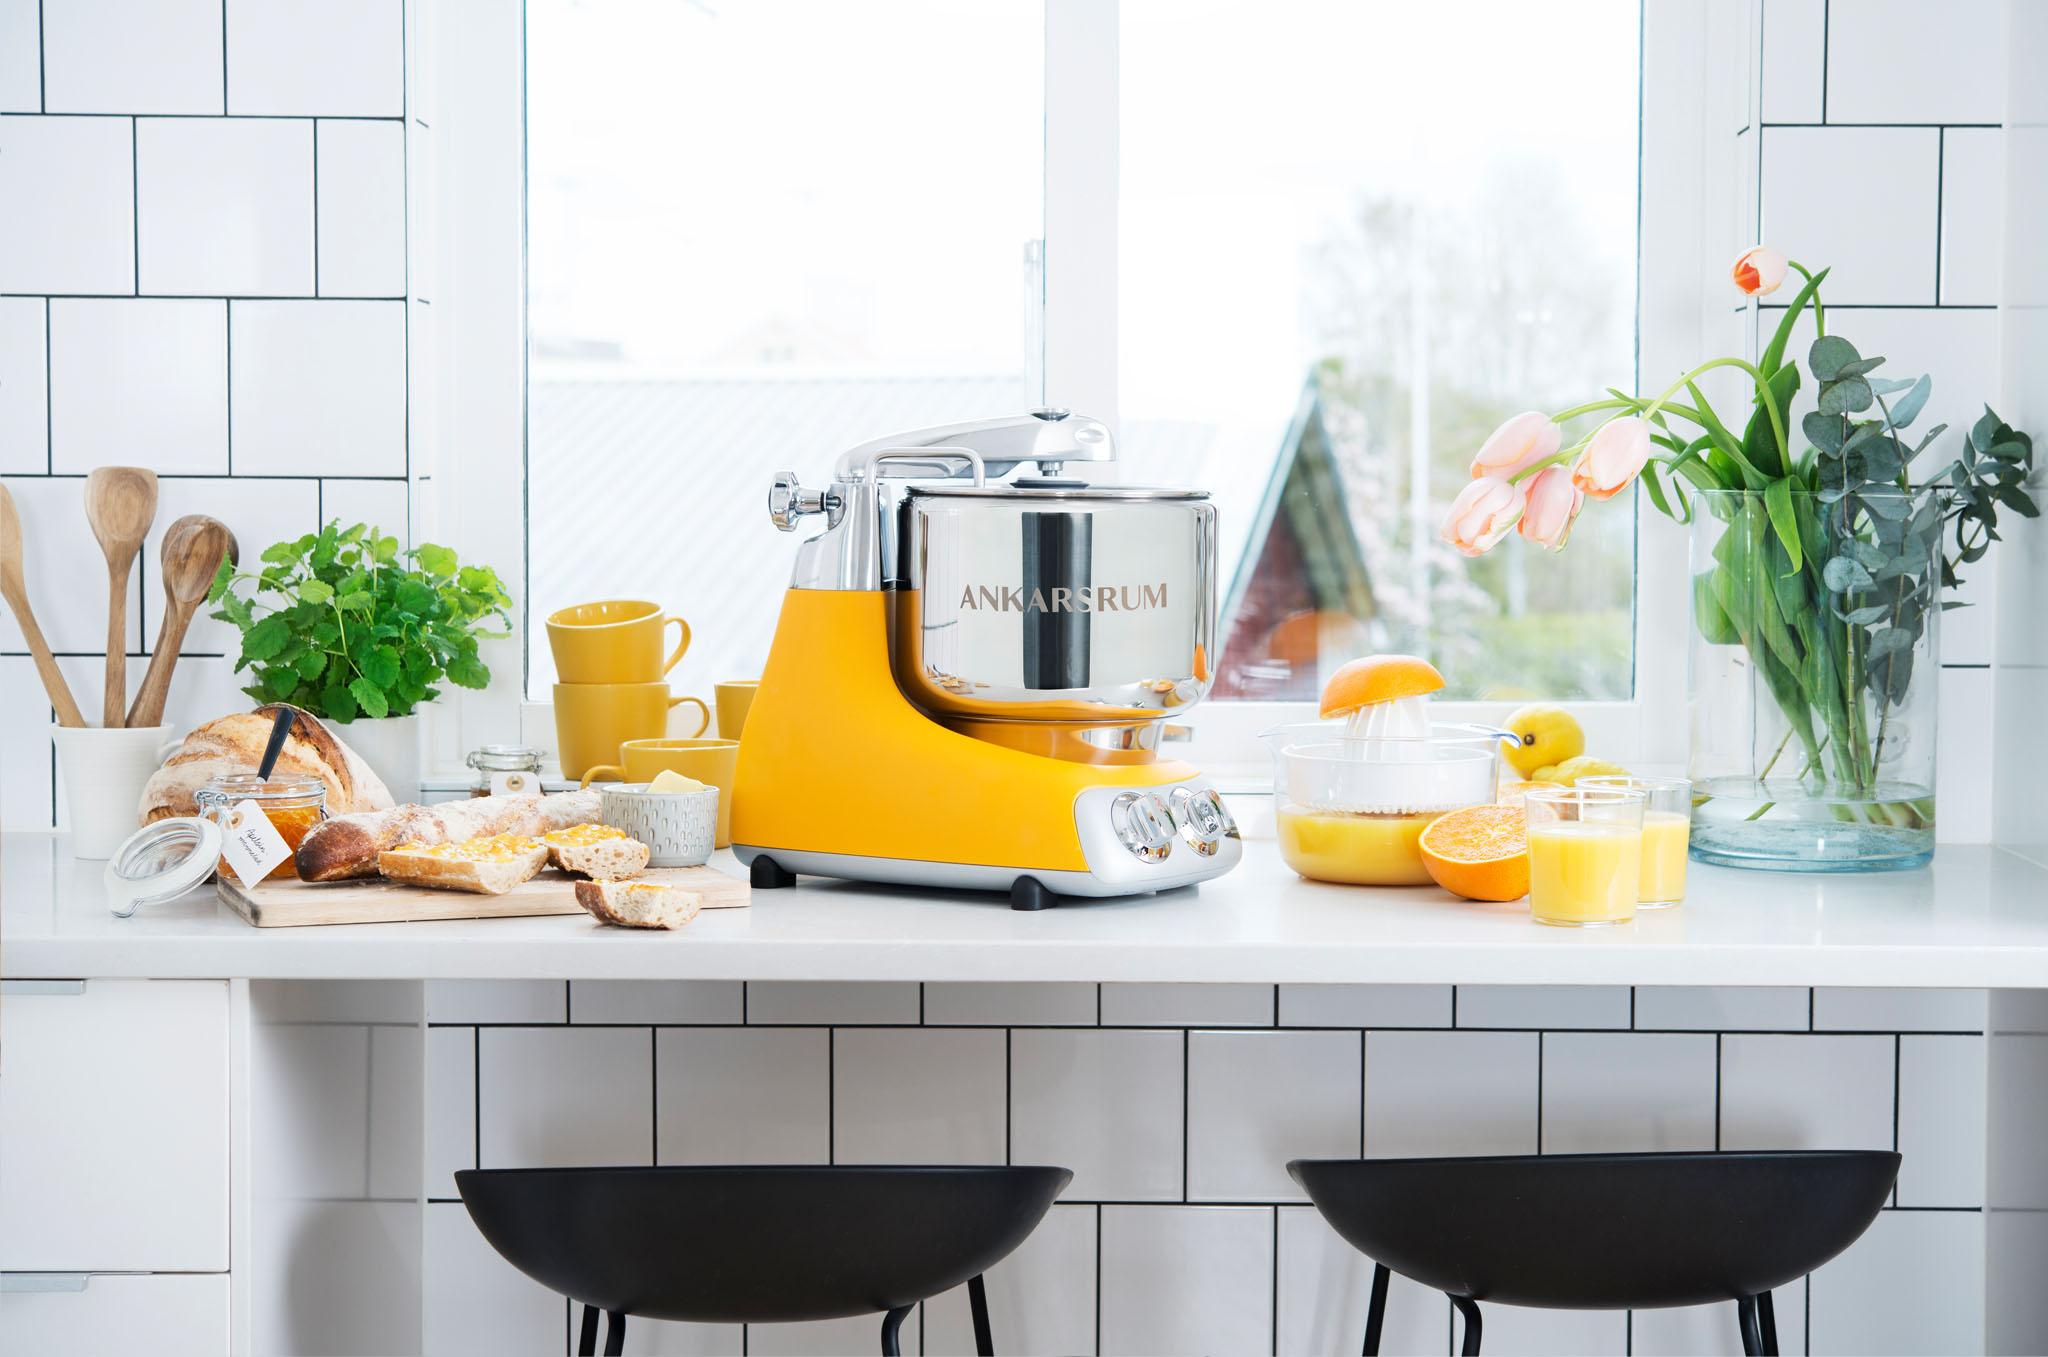 En gul Ankarsrum køkkenmaskine